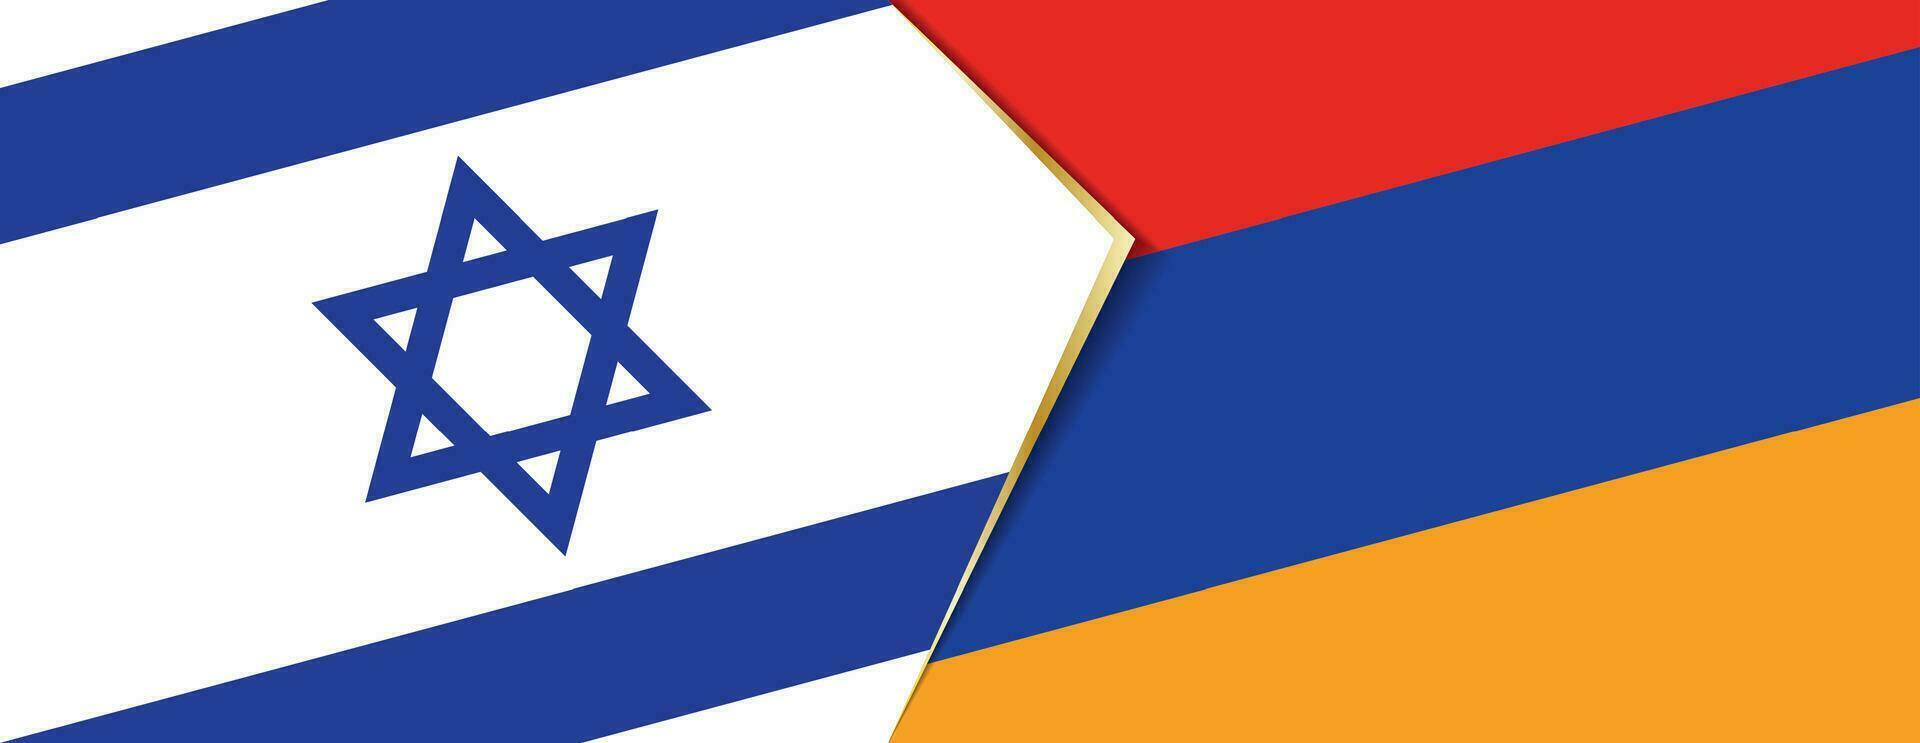 Israel y Armenia banderas, dos vector banderas